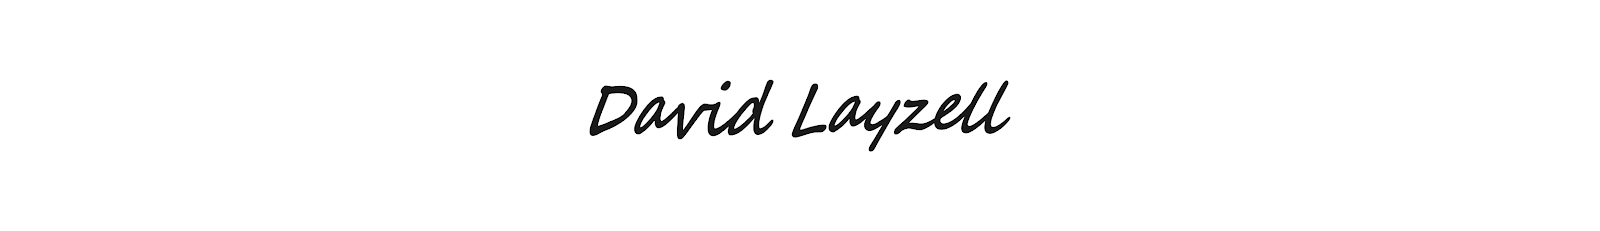 David Layzell